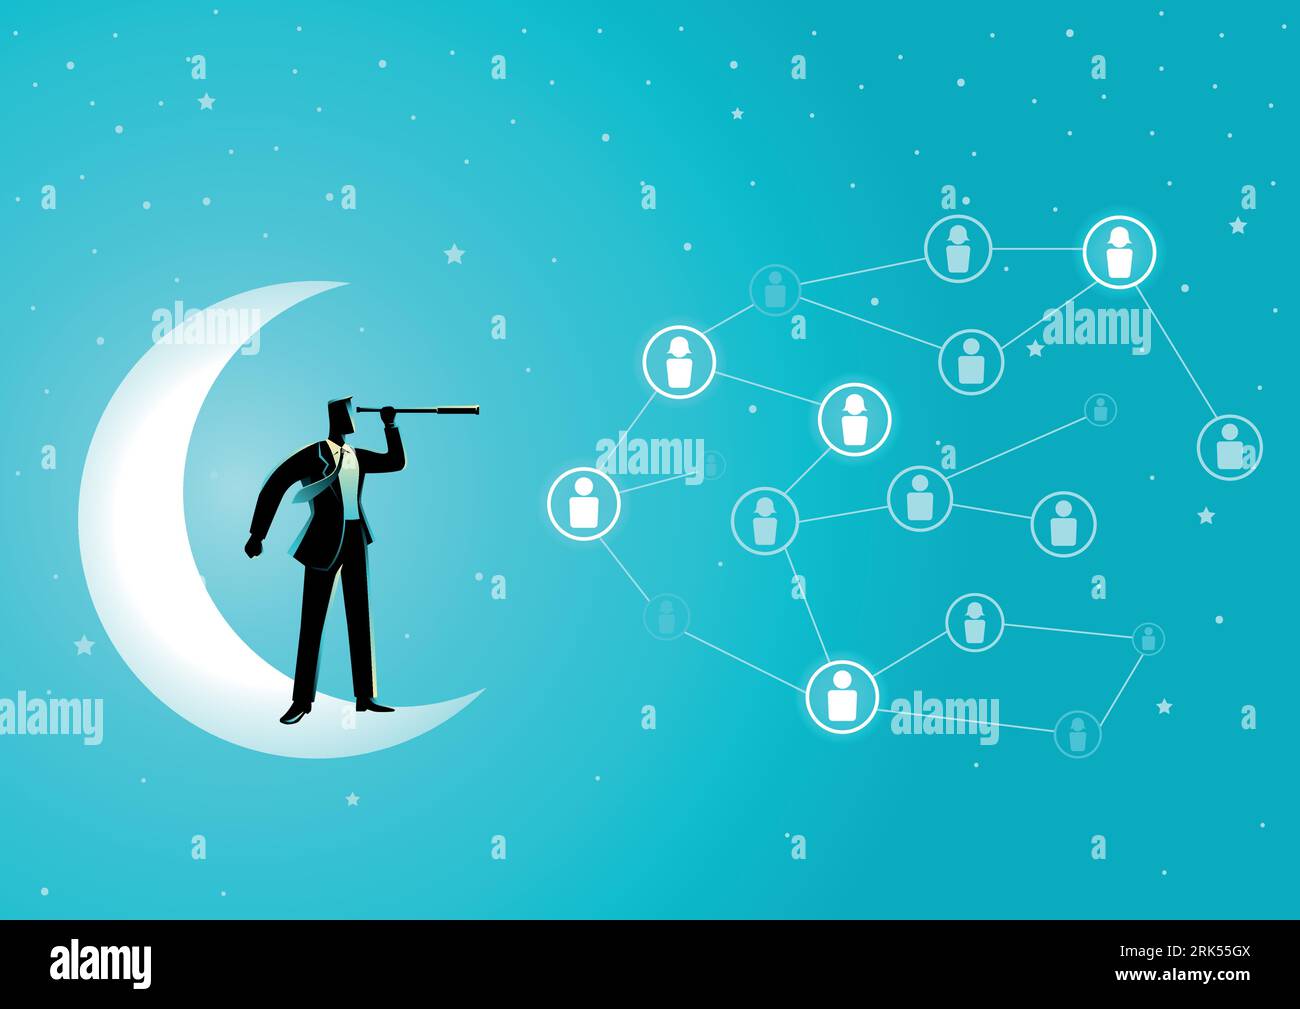 Illustration vectorielle de concept d'affaires d'un homme d'affaires debout sur un croissant de lune avec télescope à la recherche d'un candidat. Connexion sociale, ressources humaines Illustration de Vecteur